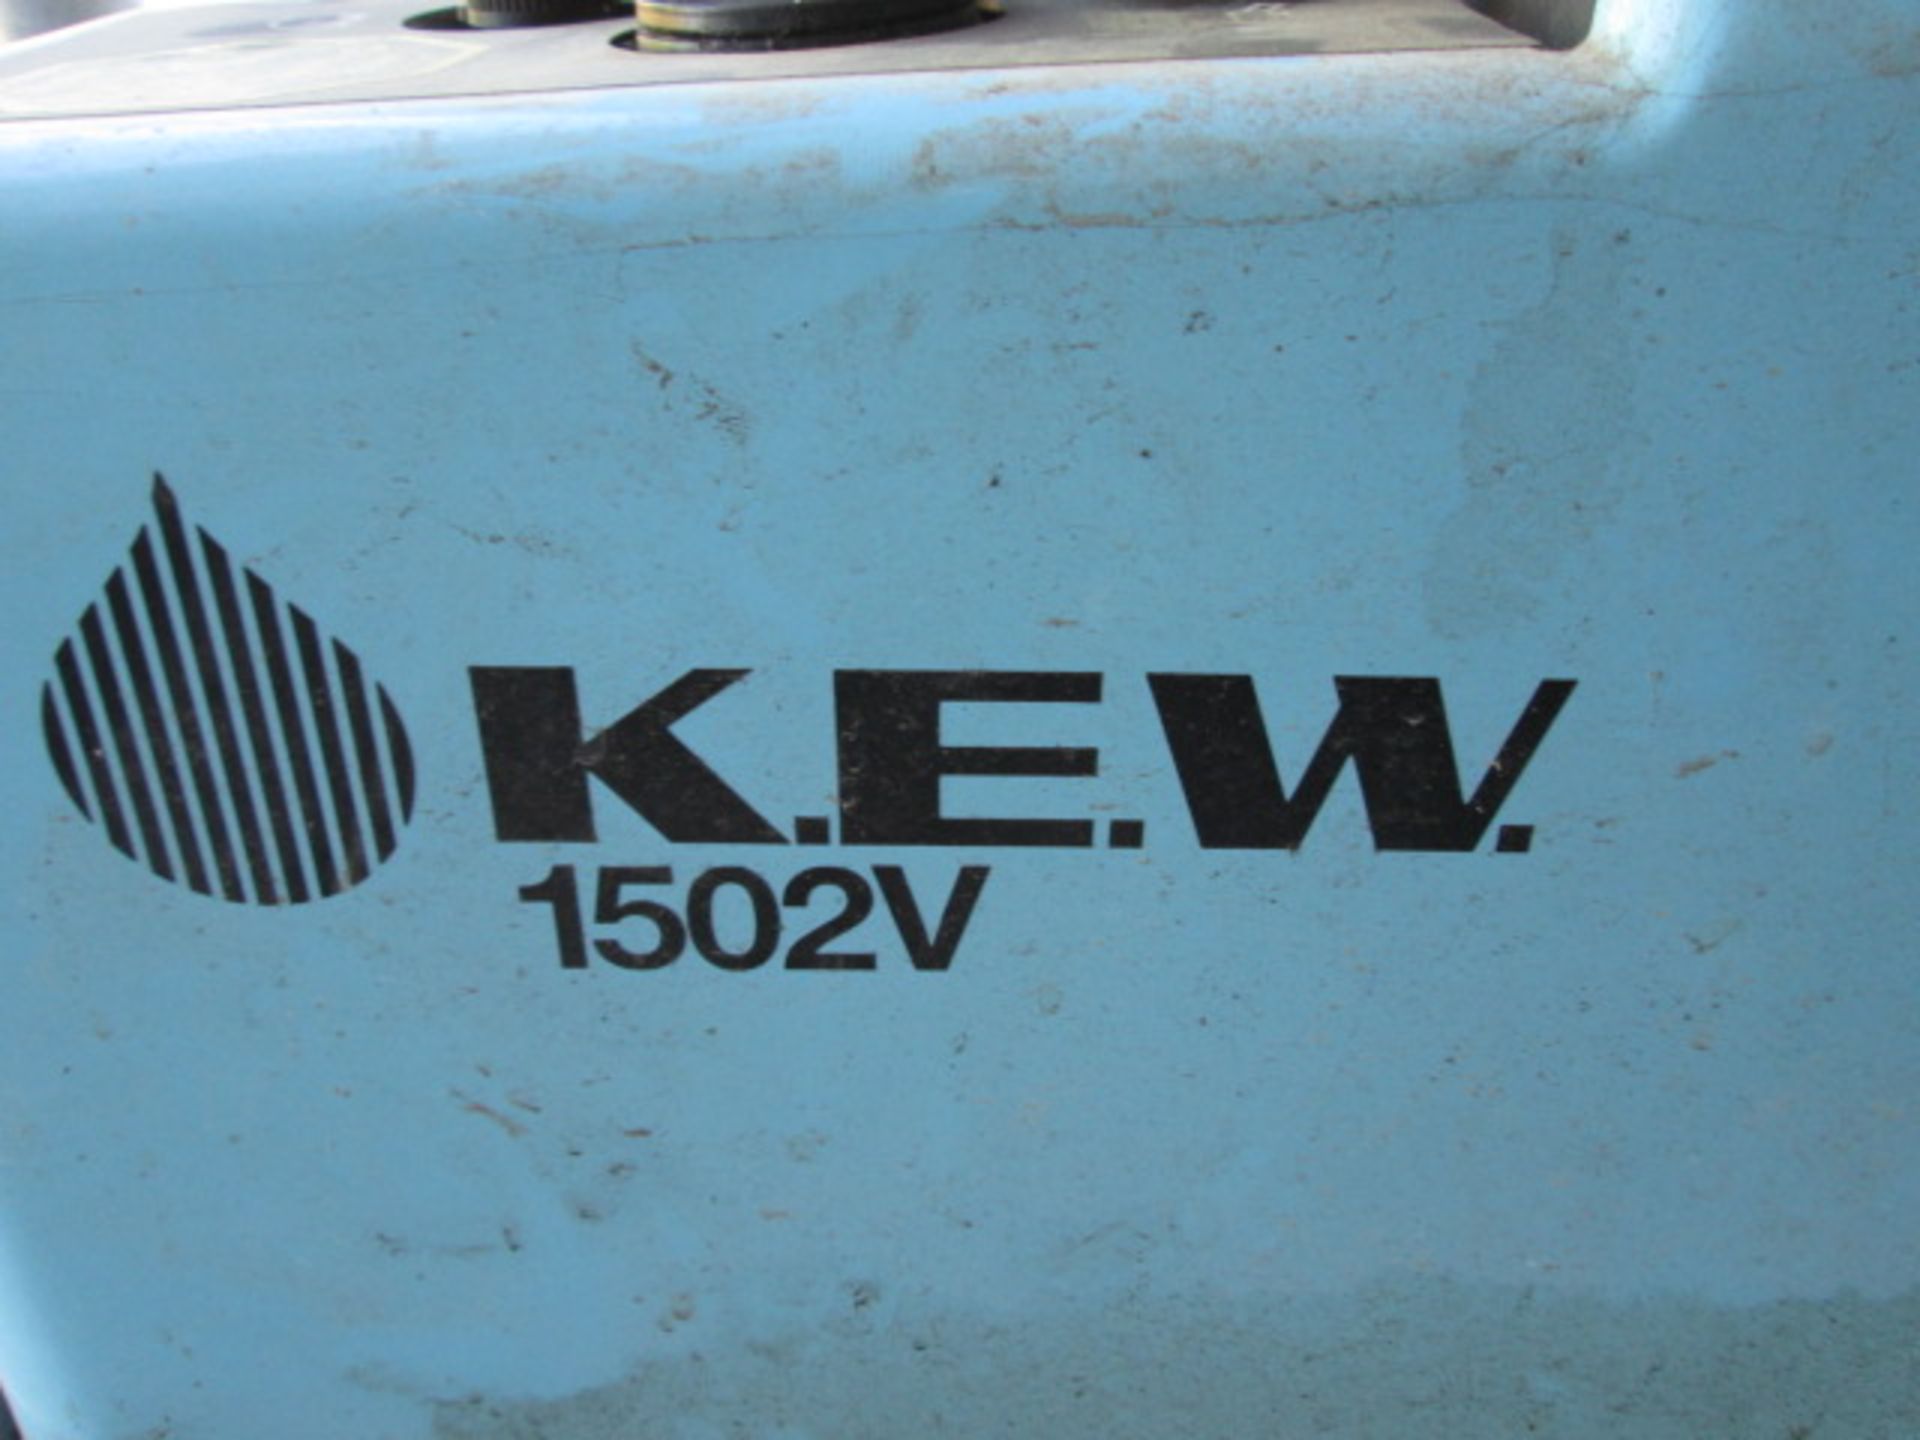 KEW 1502V POWER WASHER - Image 4 of 5